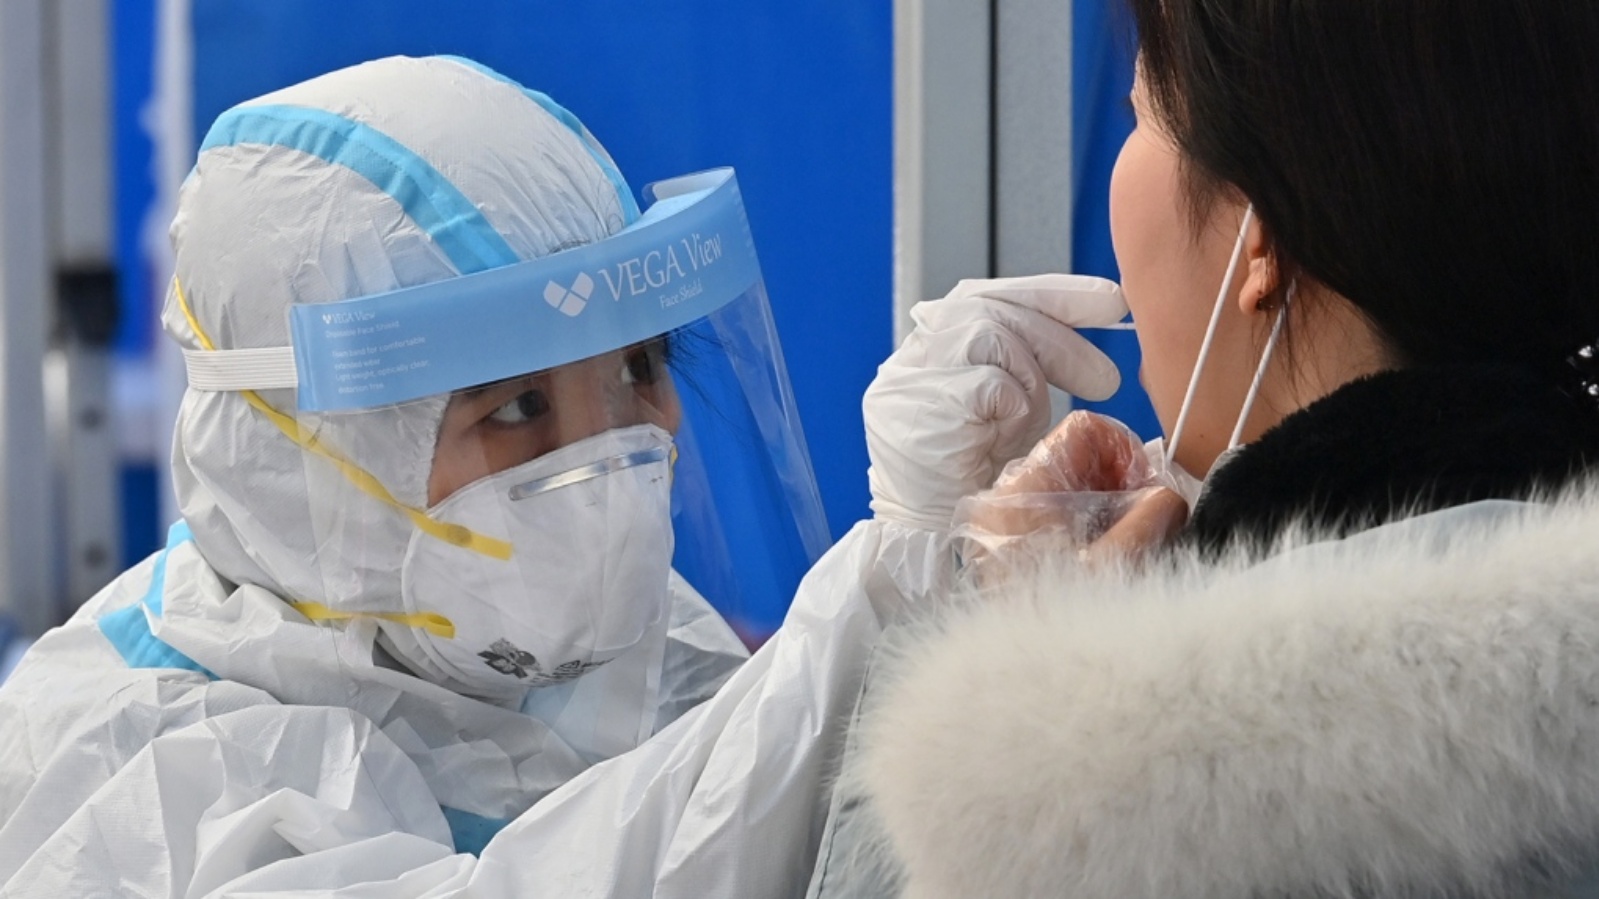 عامل صحة يرتدي ملابس واقية يأخذ عينات لاختبار كوفيد 19 من مريض في محطة اختبار في سيول في 27 نوفمبر 2020